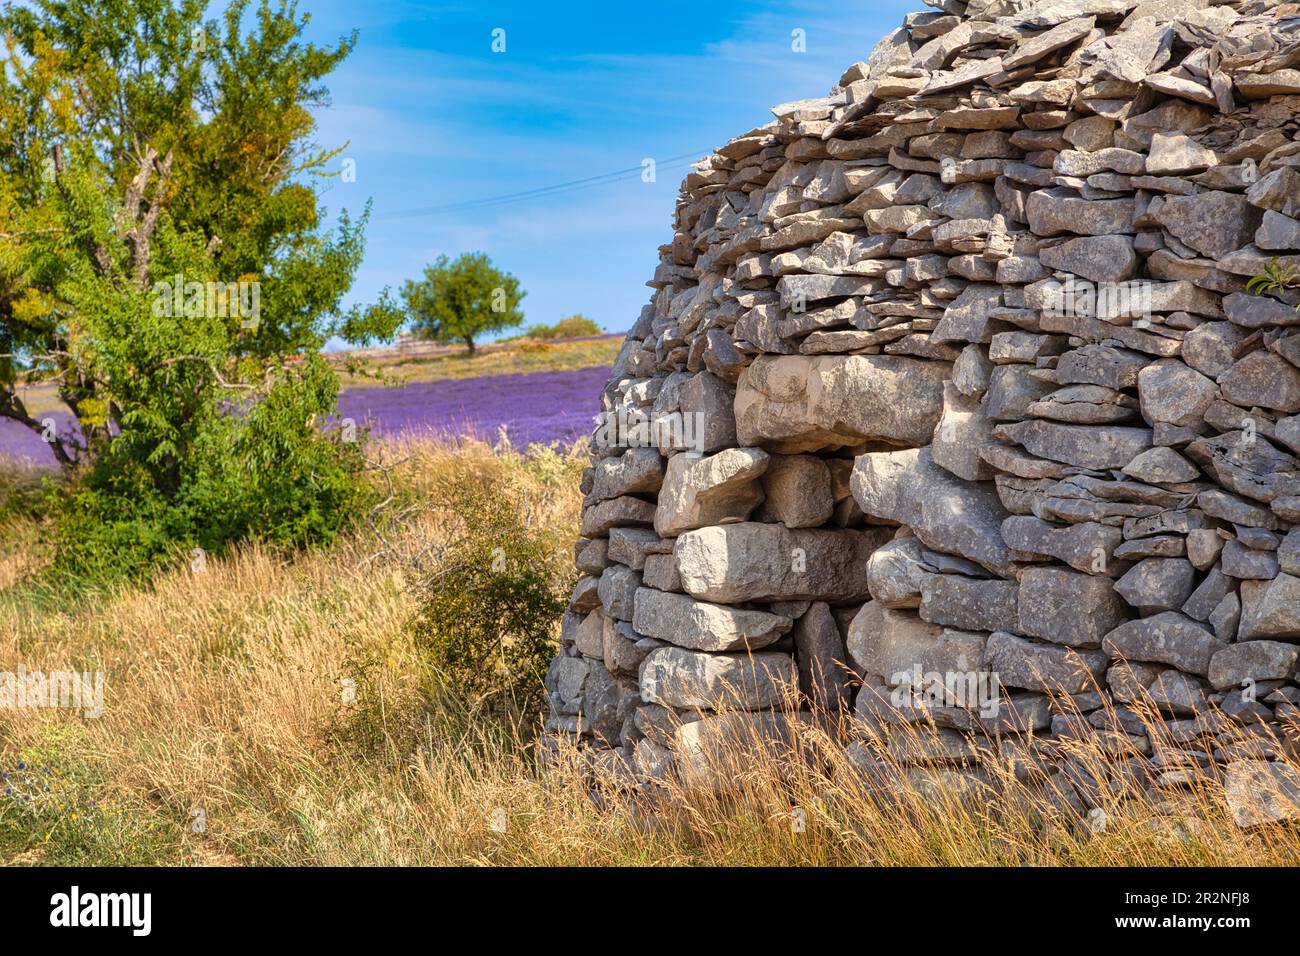 Borie sur le champ de lavande, Luberon, Département du Vaucluse dans la région Provence-Alpes-Côte d'Azur, Provence, France Banque D'Images